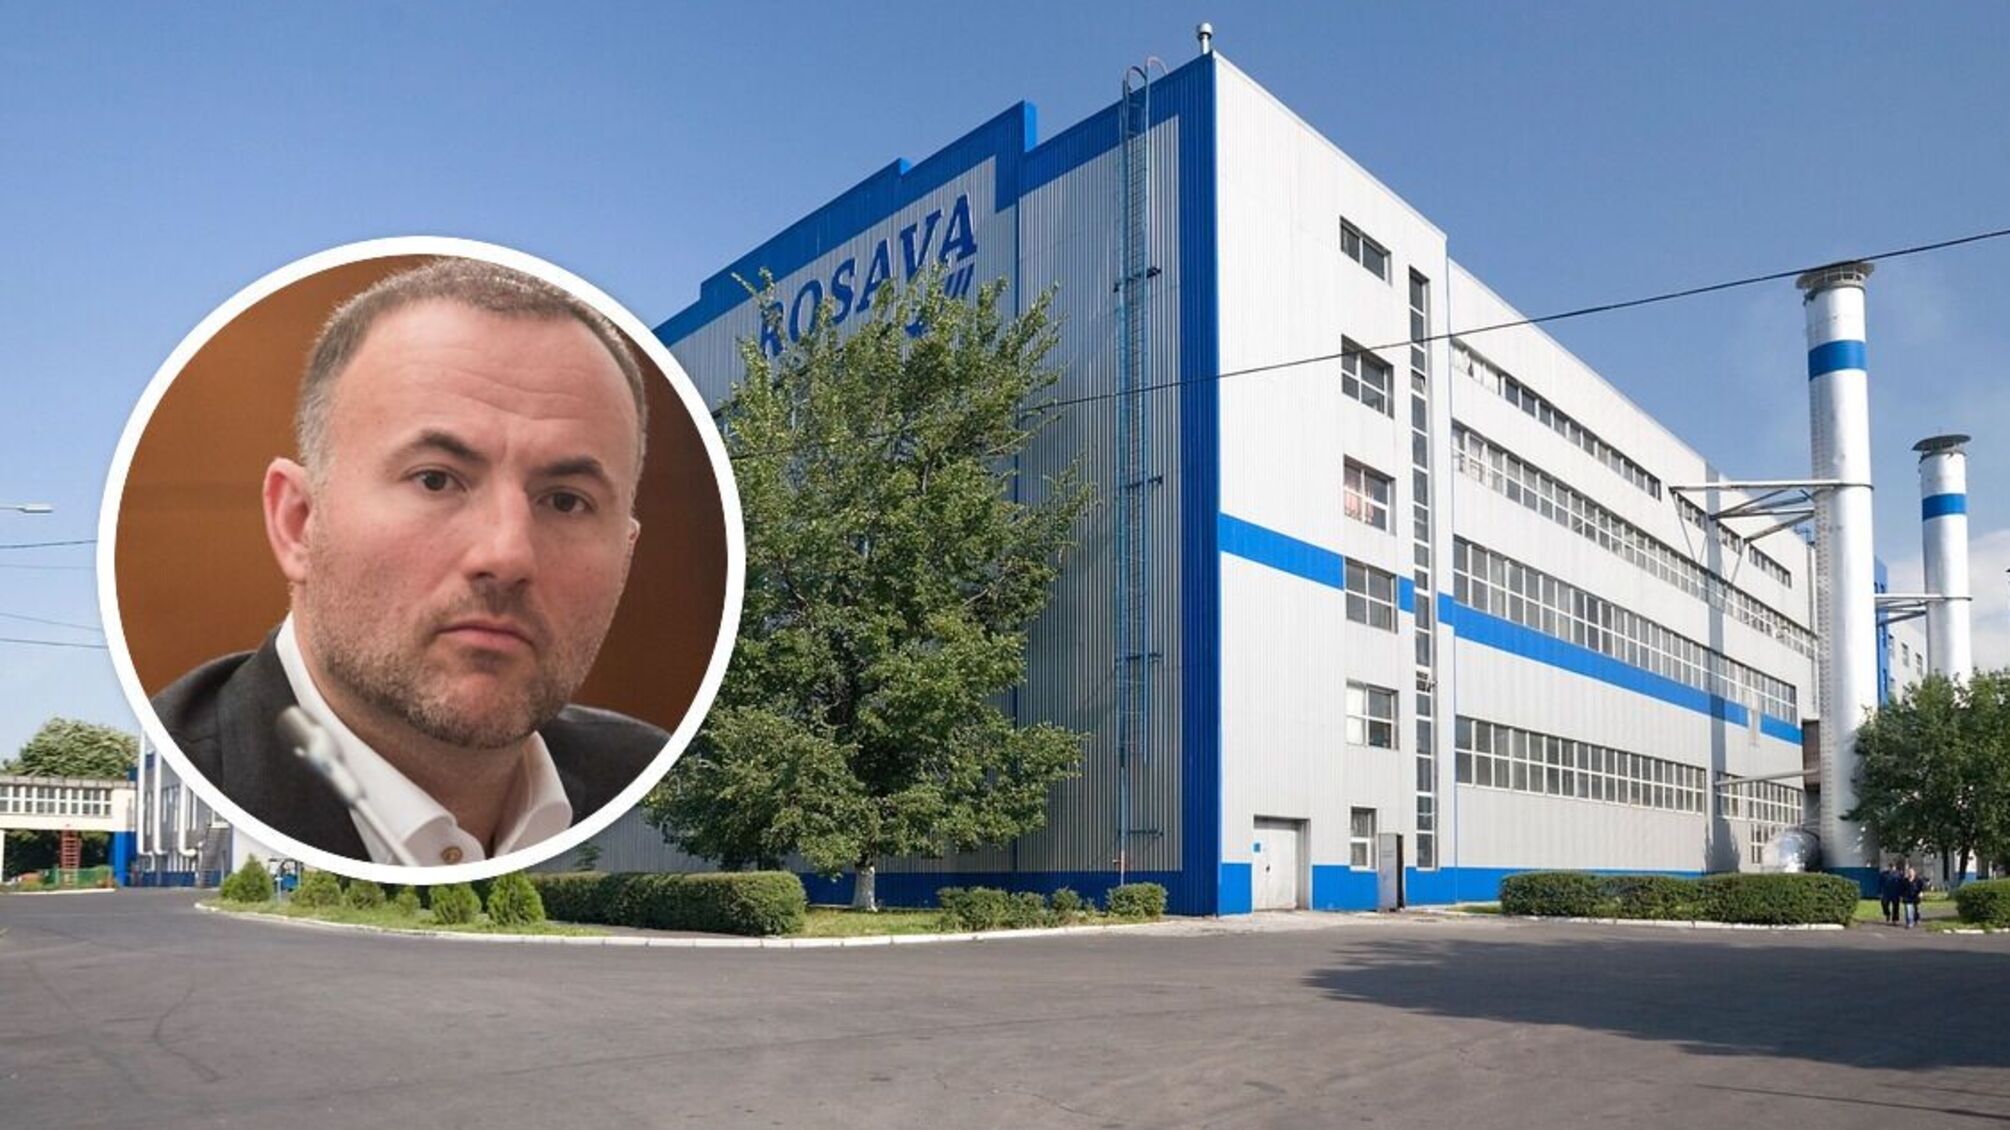 Білоцерківський завод 'Росава' можуть пустити з молотка: борги підприємства викупила структура Фукса